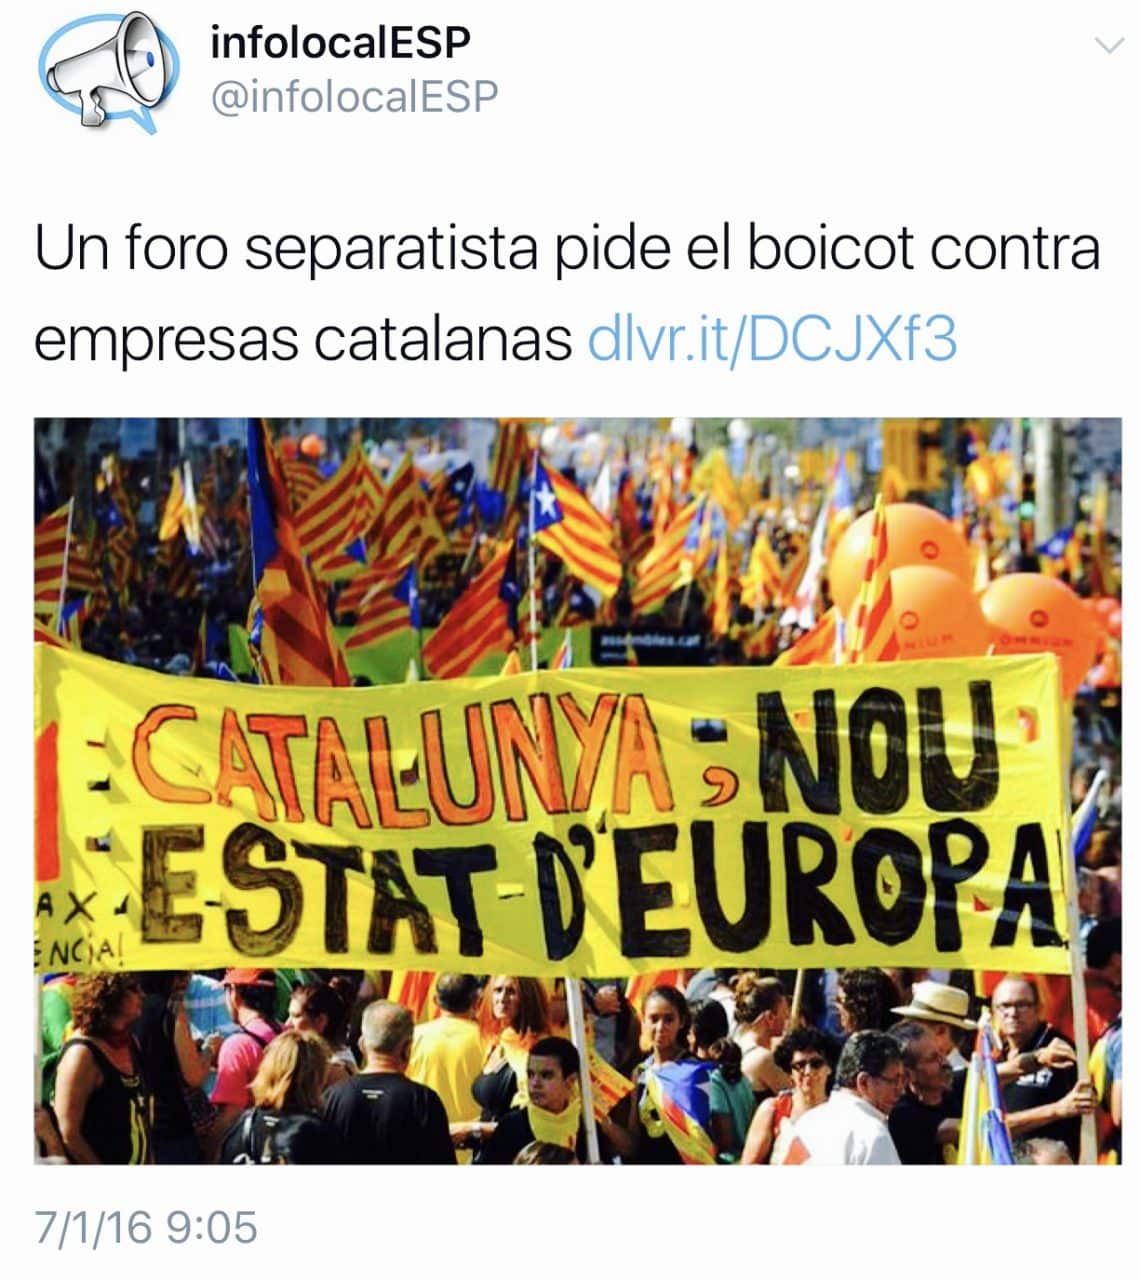 El boicot a las marcas catalanas en las redes